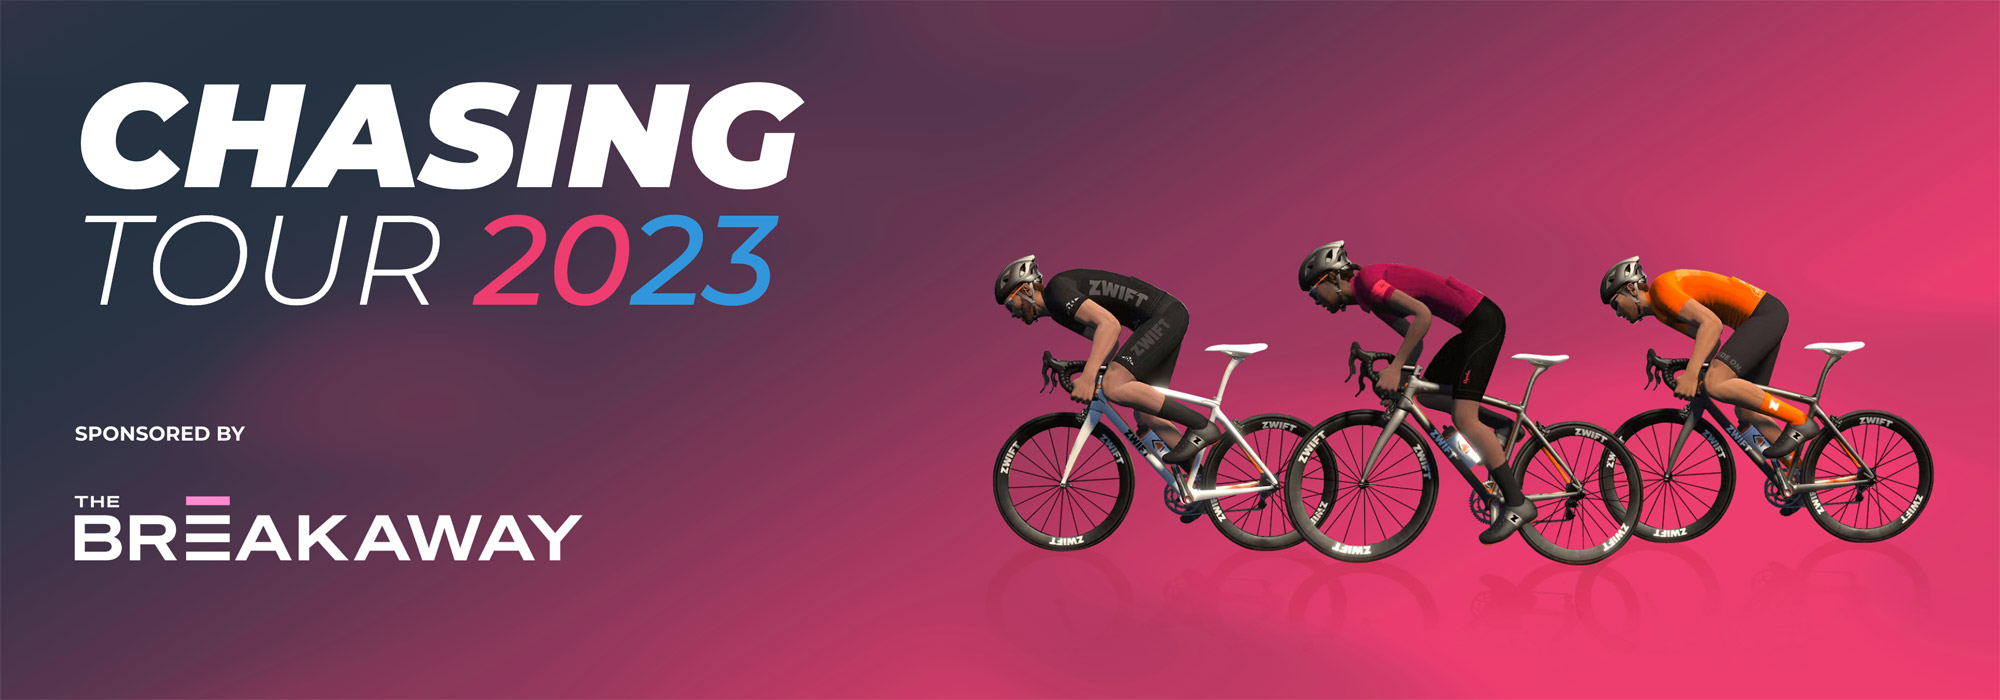 Chasing Tour Announced A YearLong Zwift Racing Calendar LaptrinhX